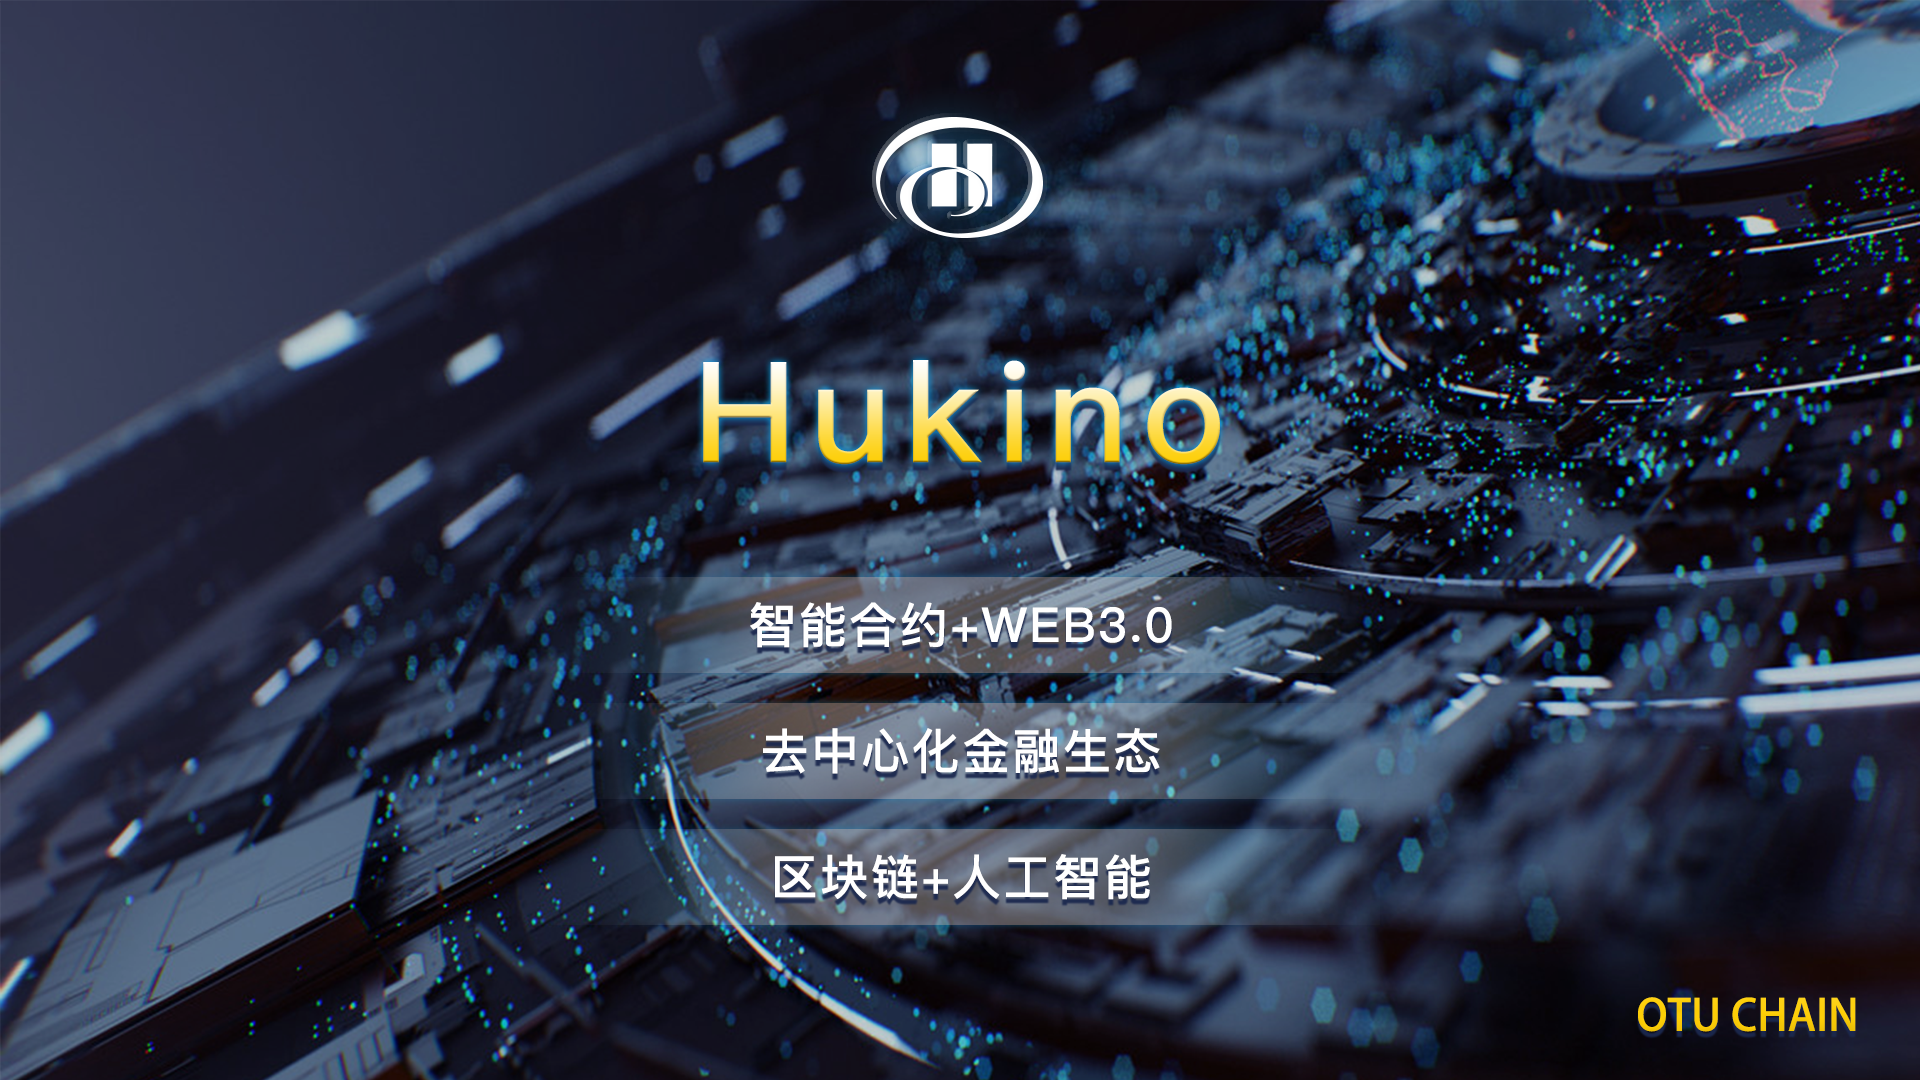 万物共享Hukino生态链诞生 区块链+人工智能打造颠覆性创新风口